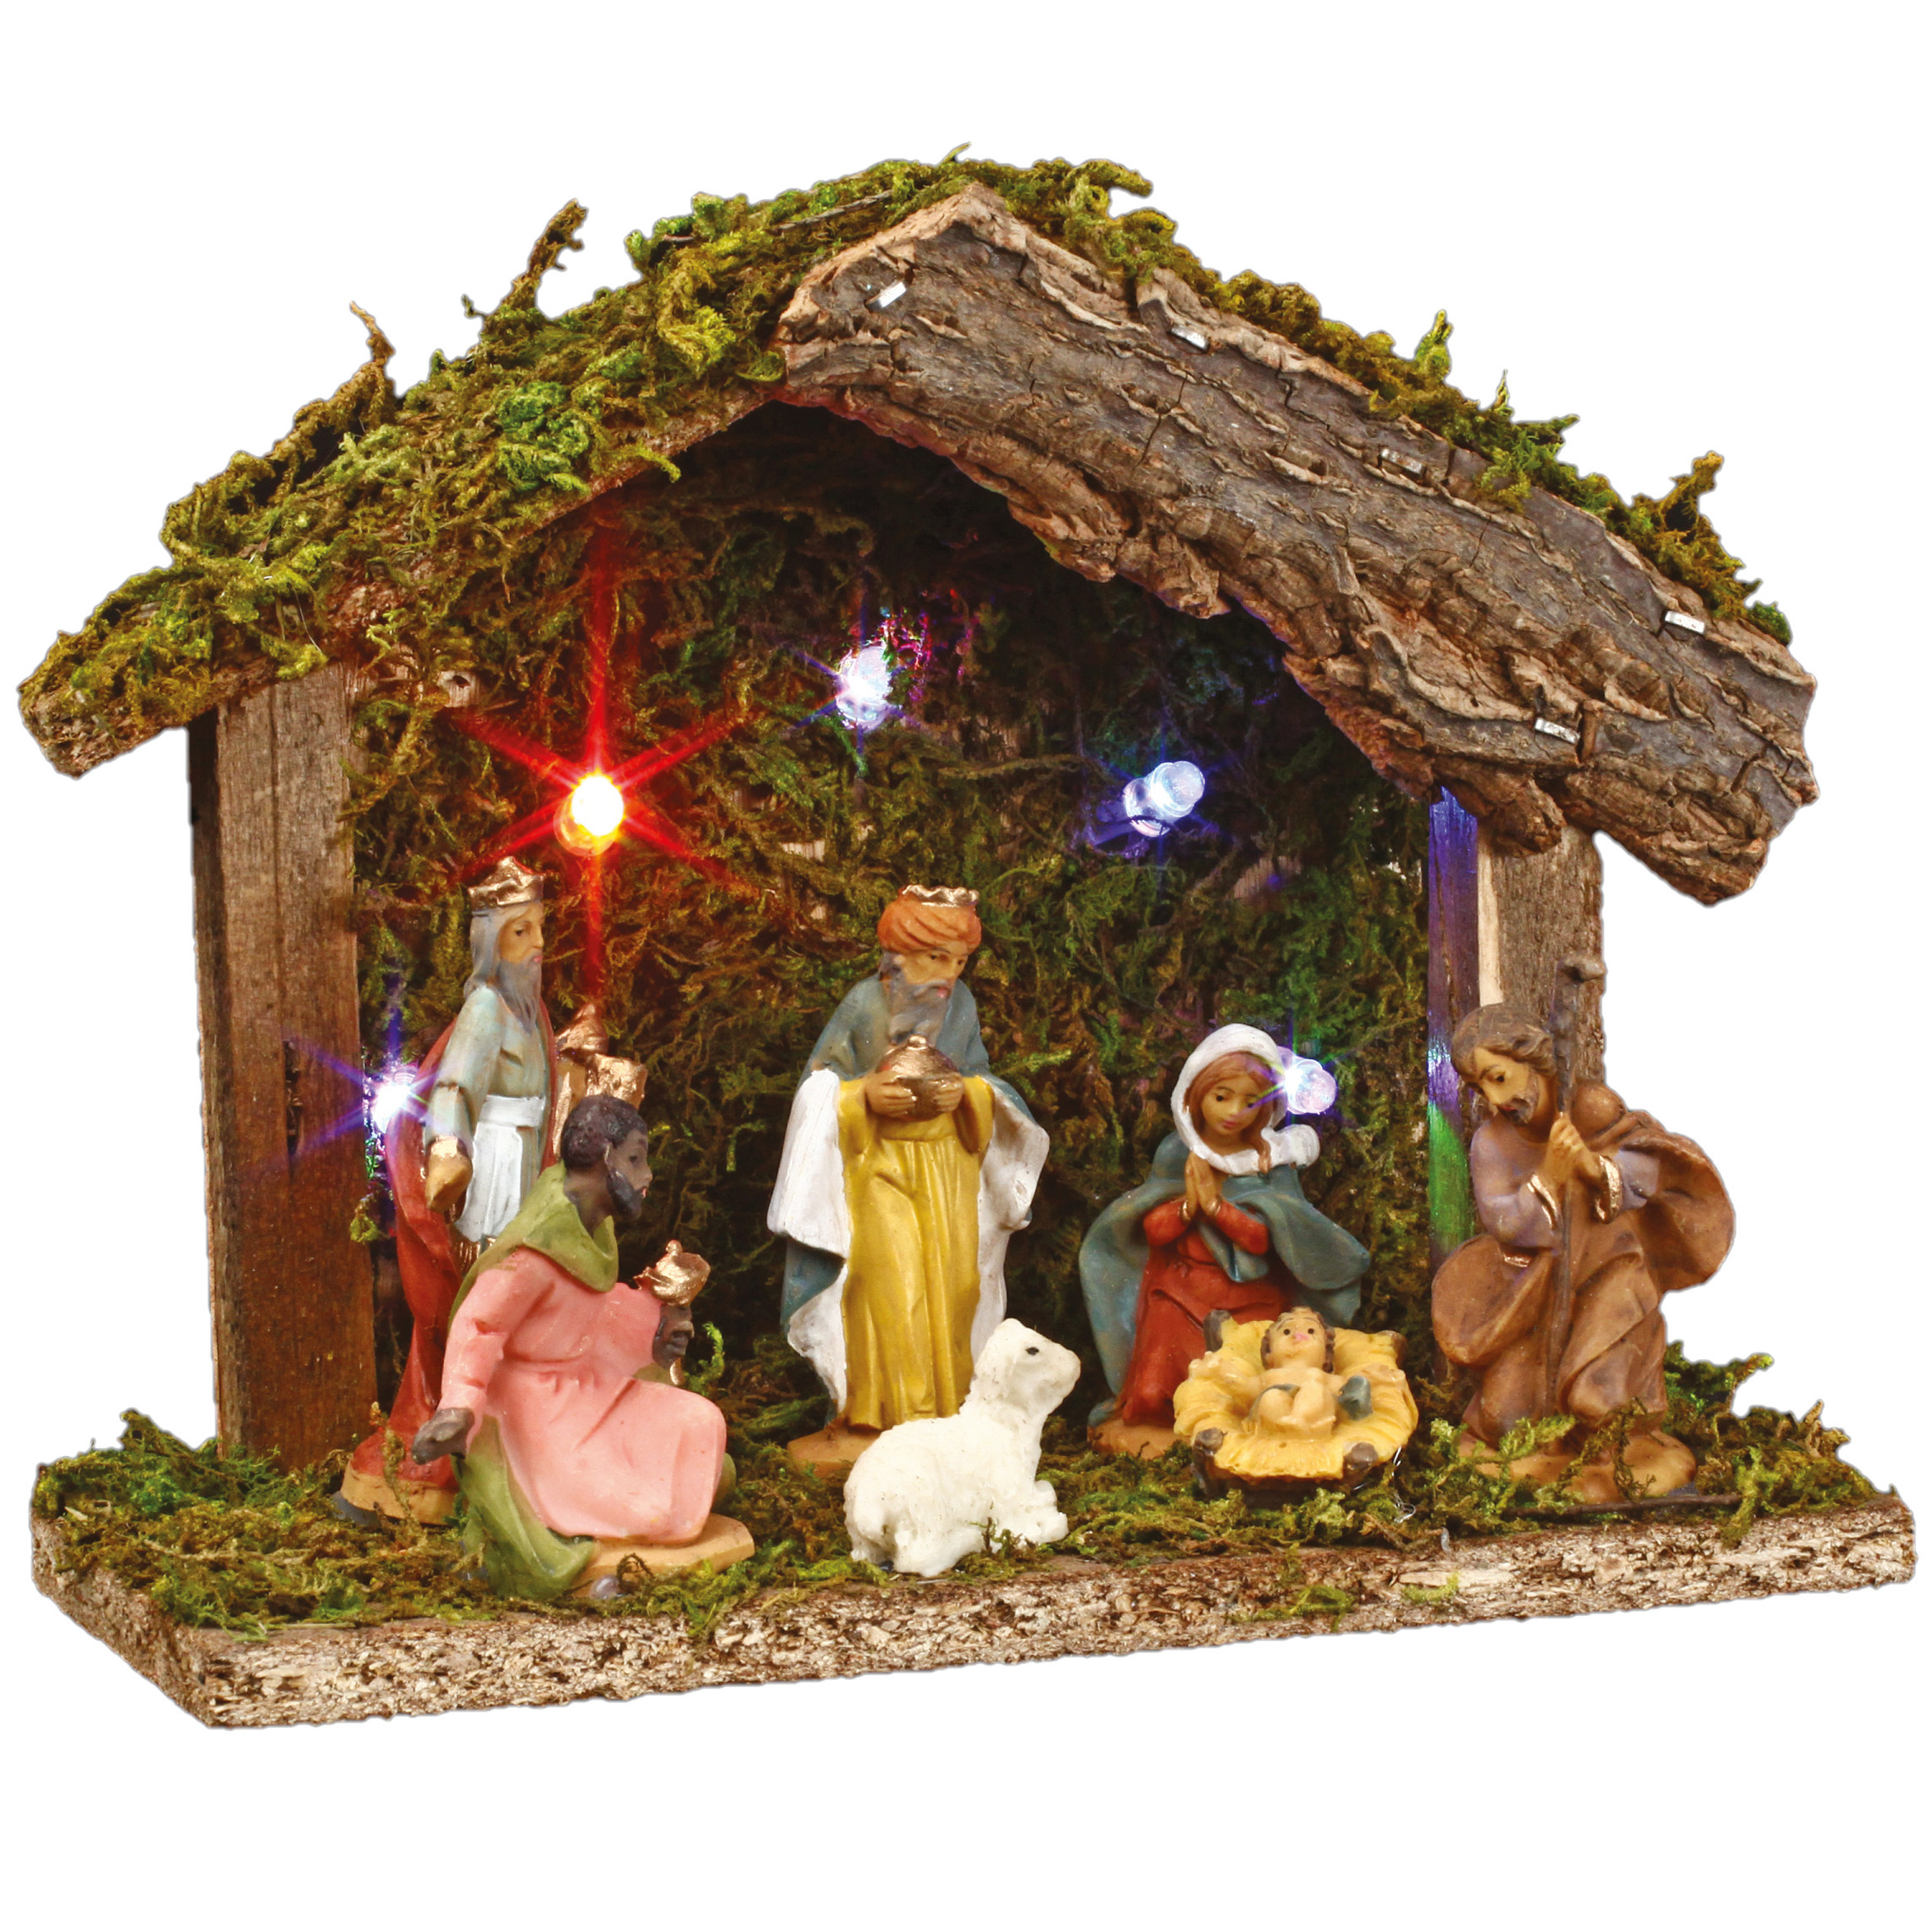 Complete verlichte kerststal inclusief kerststal beelden L18 x B8 x H13,5 cm